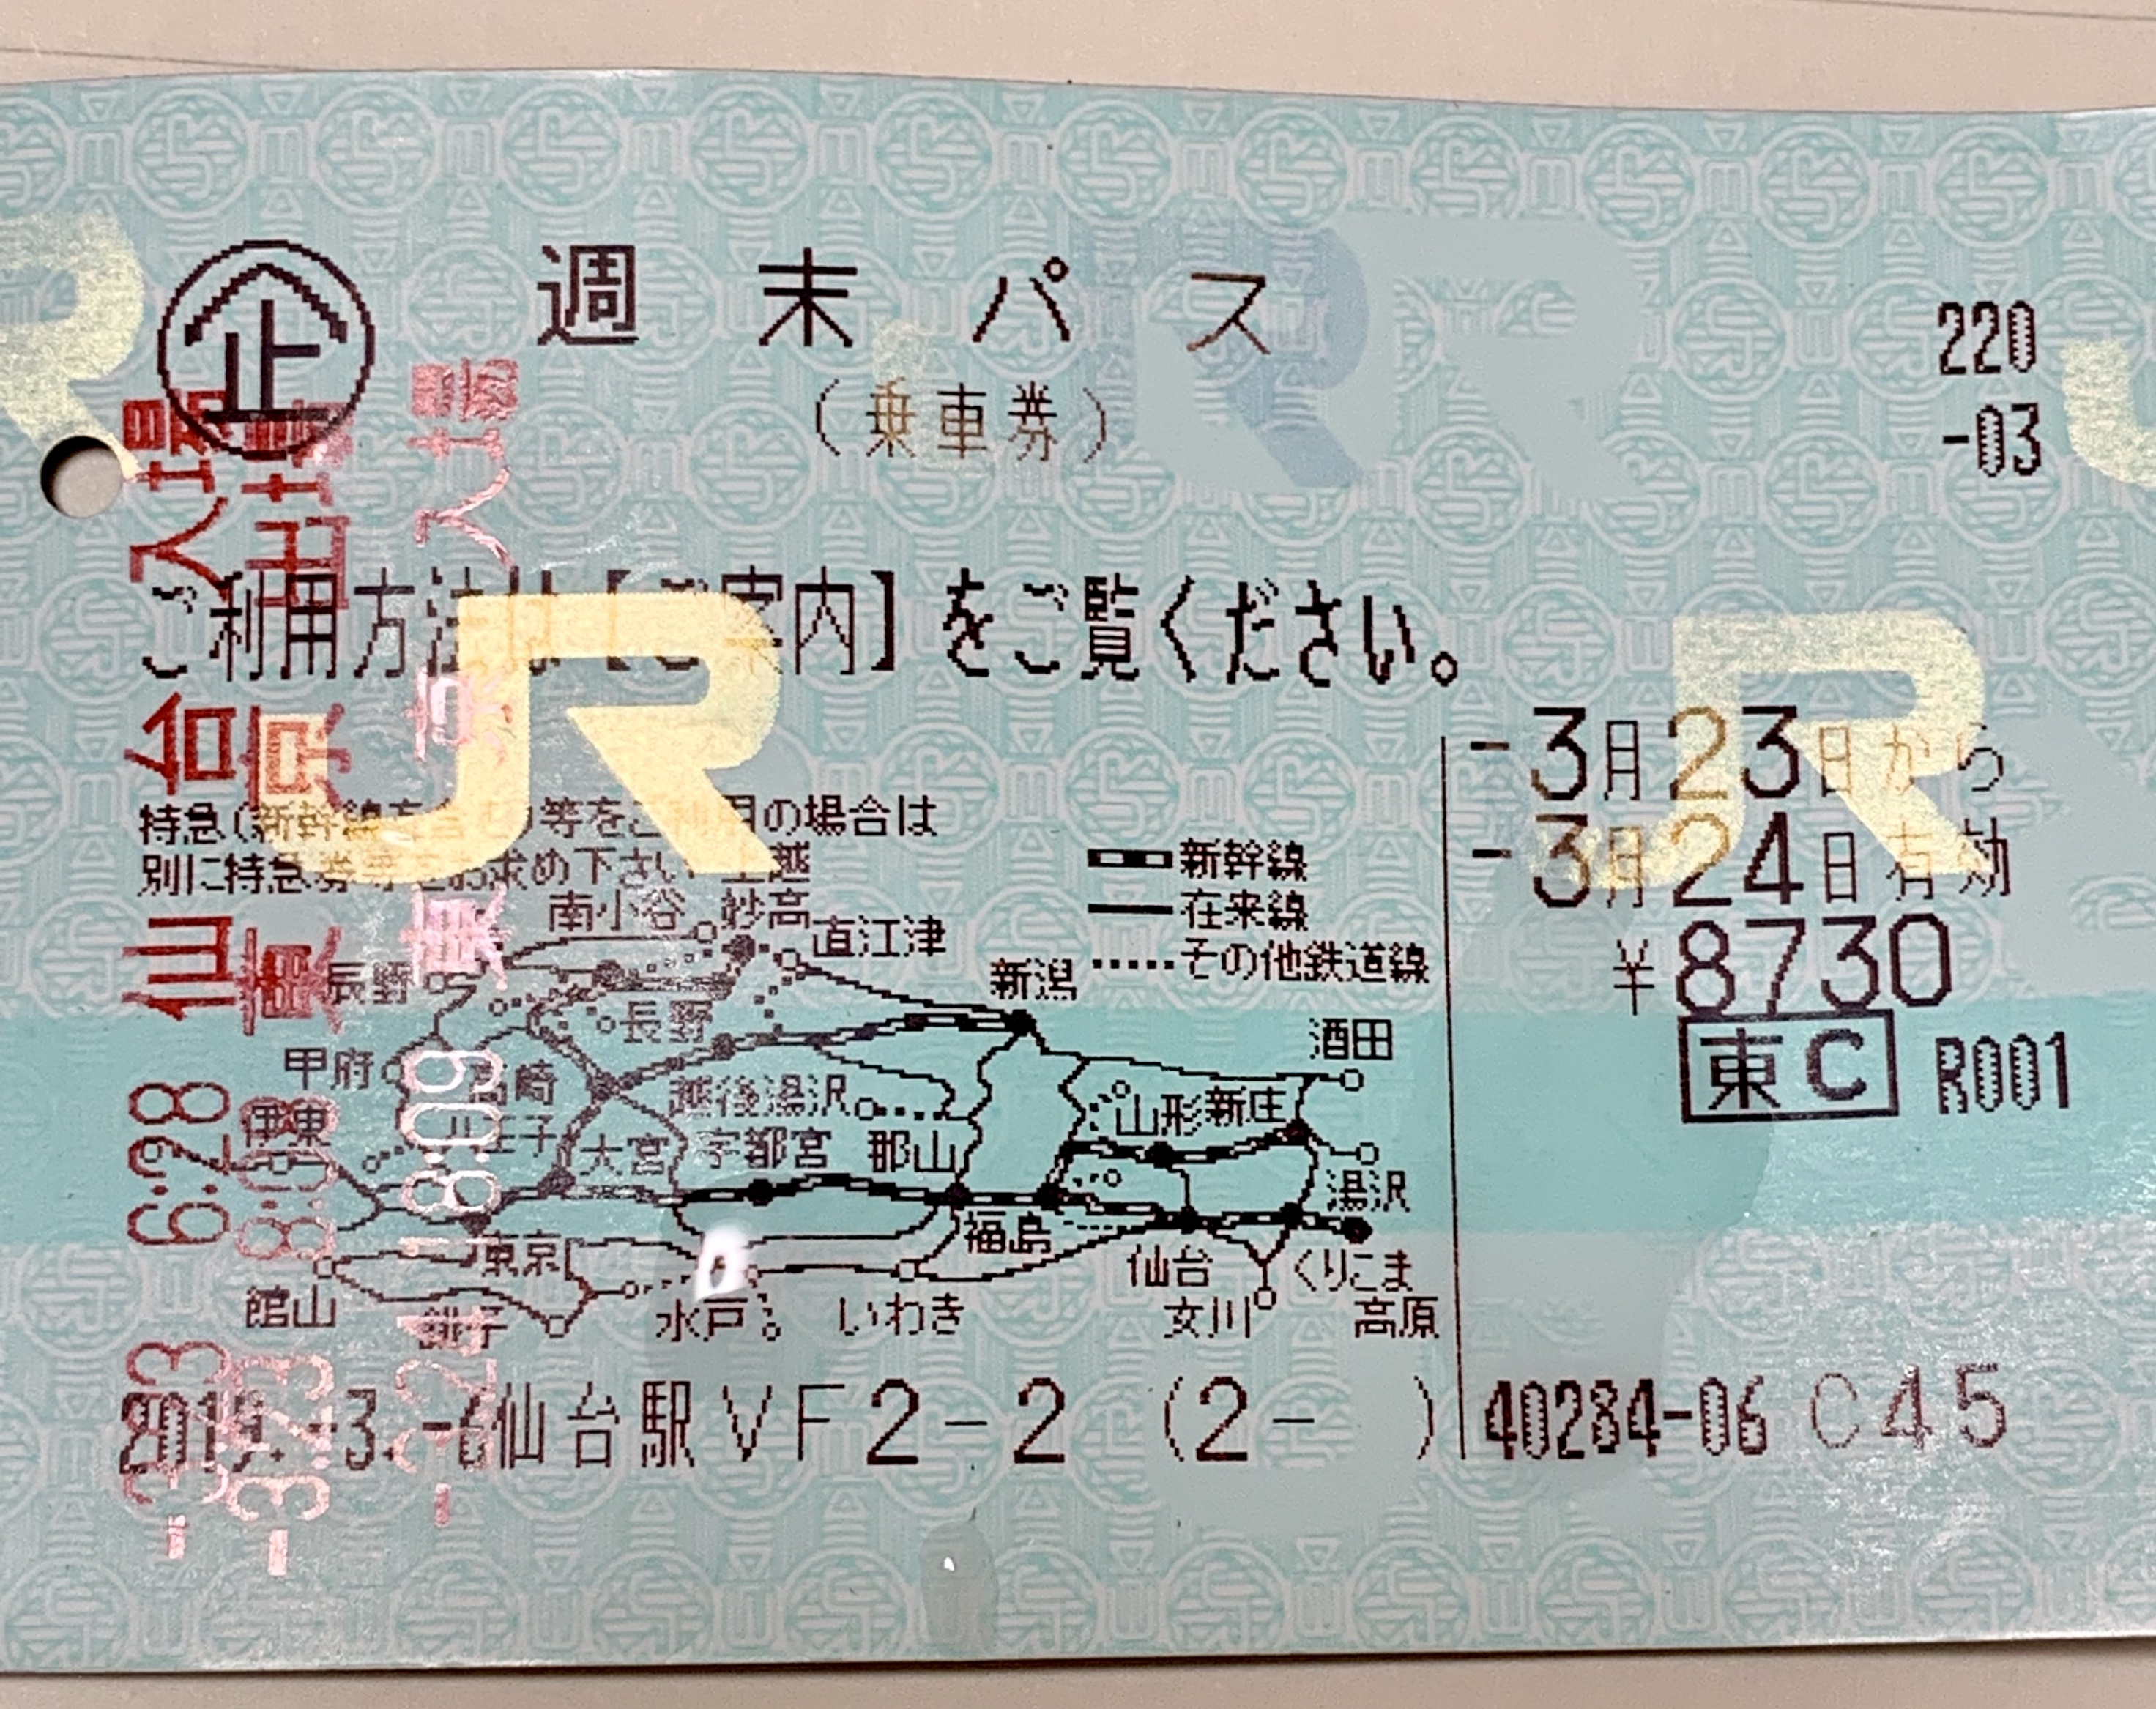 仙台東京をjr東北新幹線で往復 週末パスを使うと3000円もお得 おゆきの学び